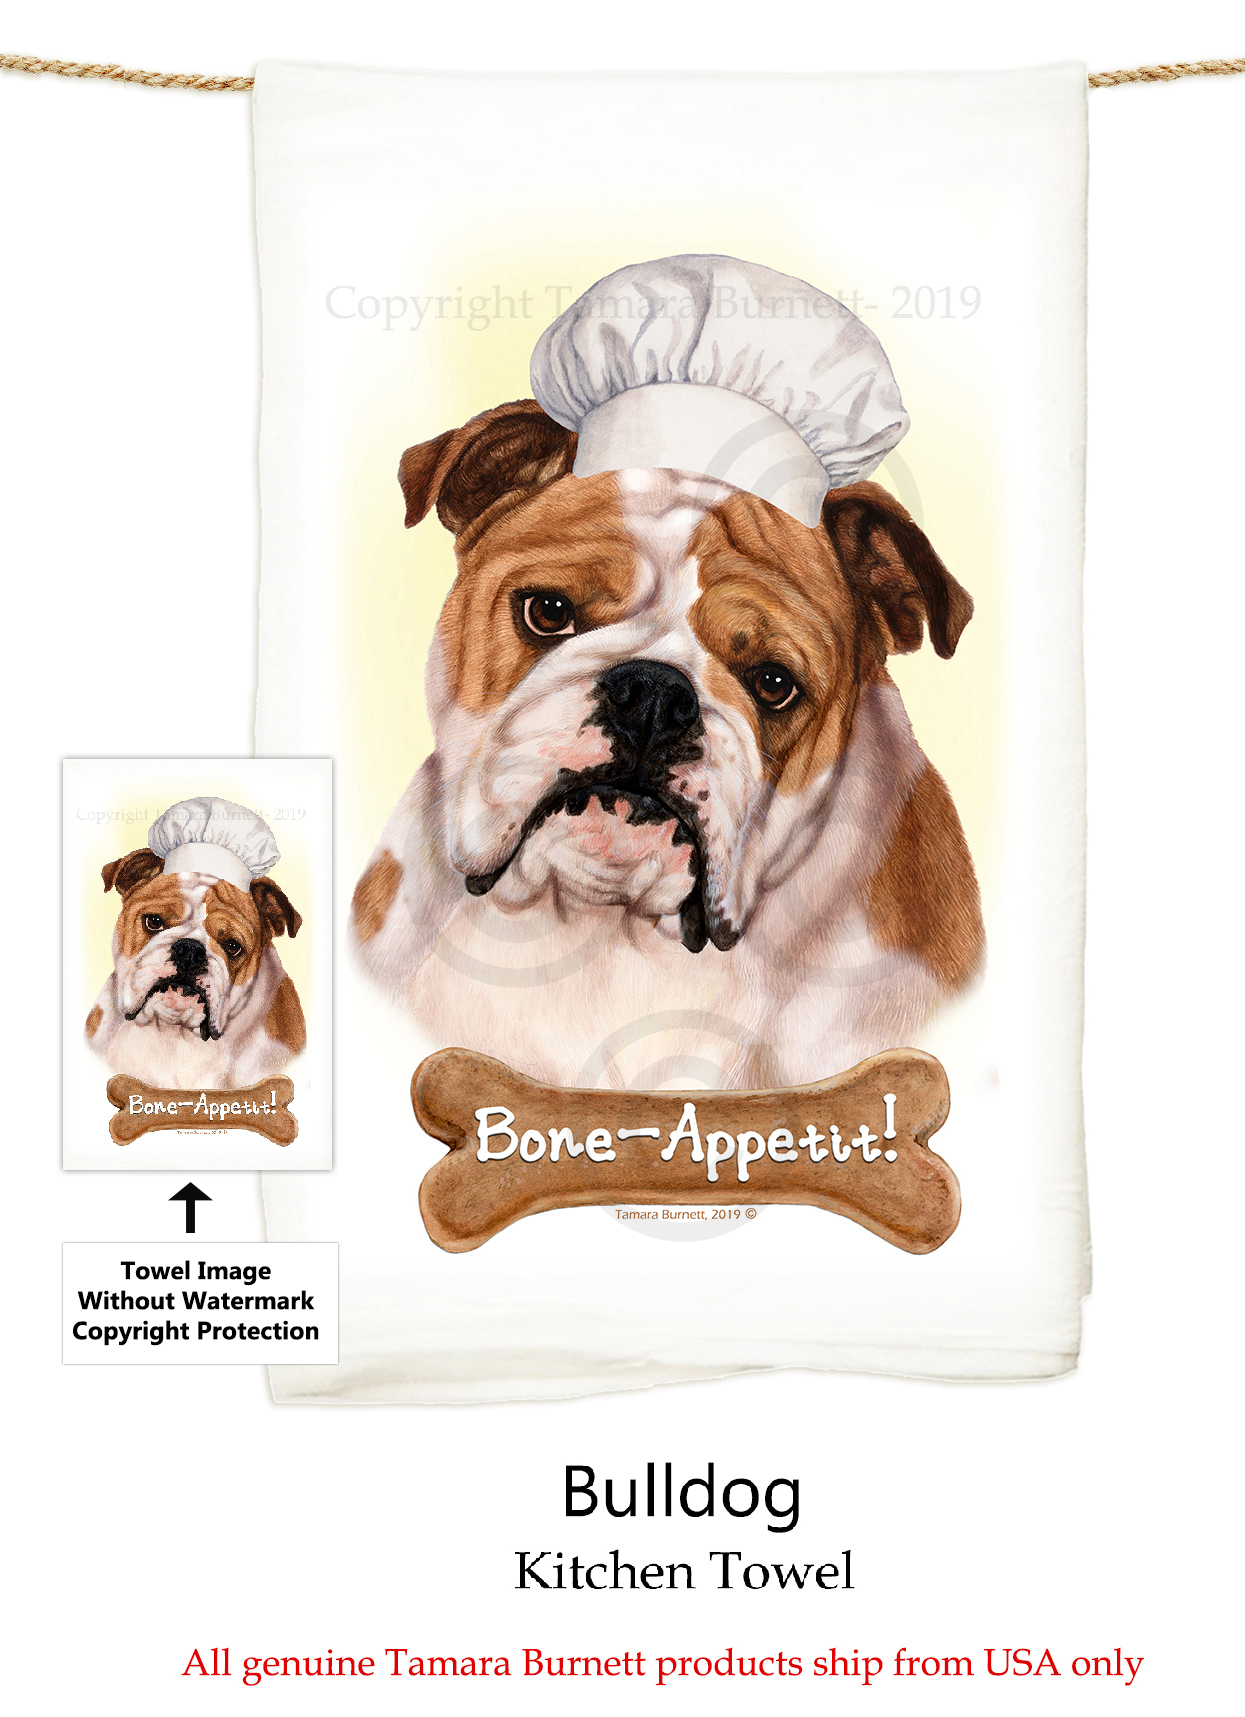 Bulldog (English) Tan & White - Flour Sack Towel image sized 1245 x 1717